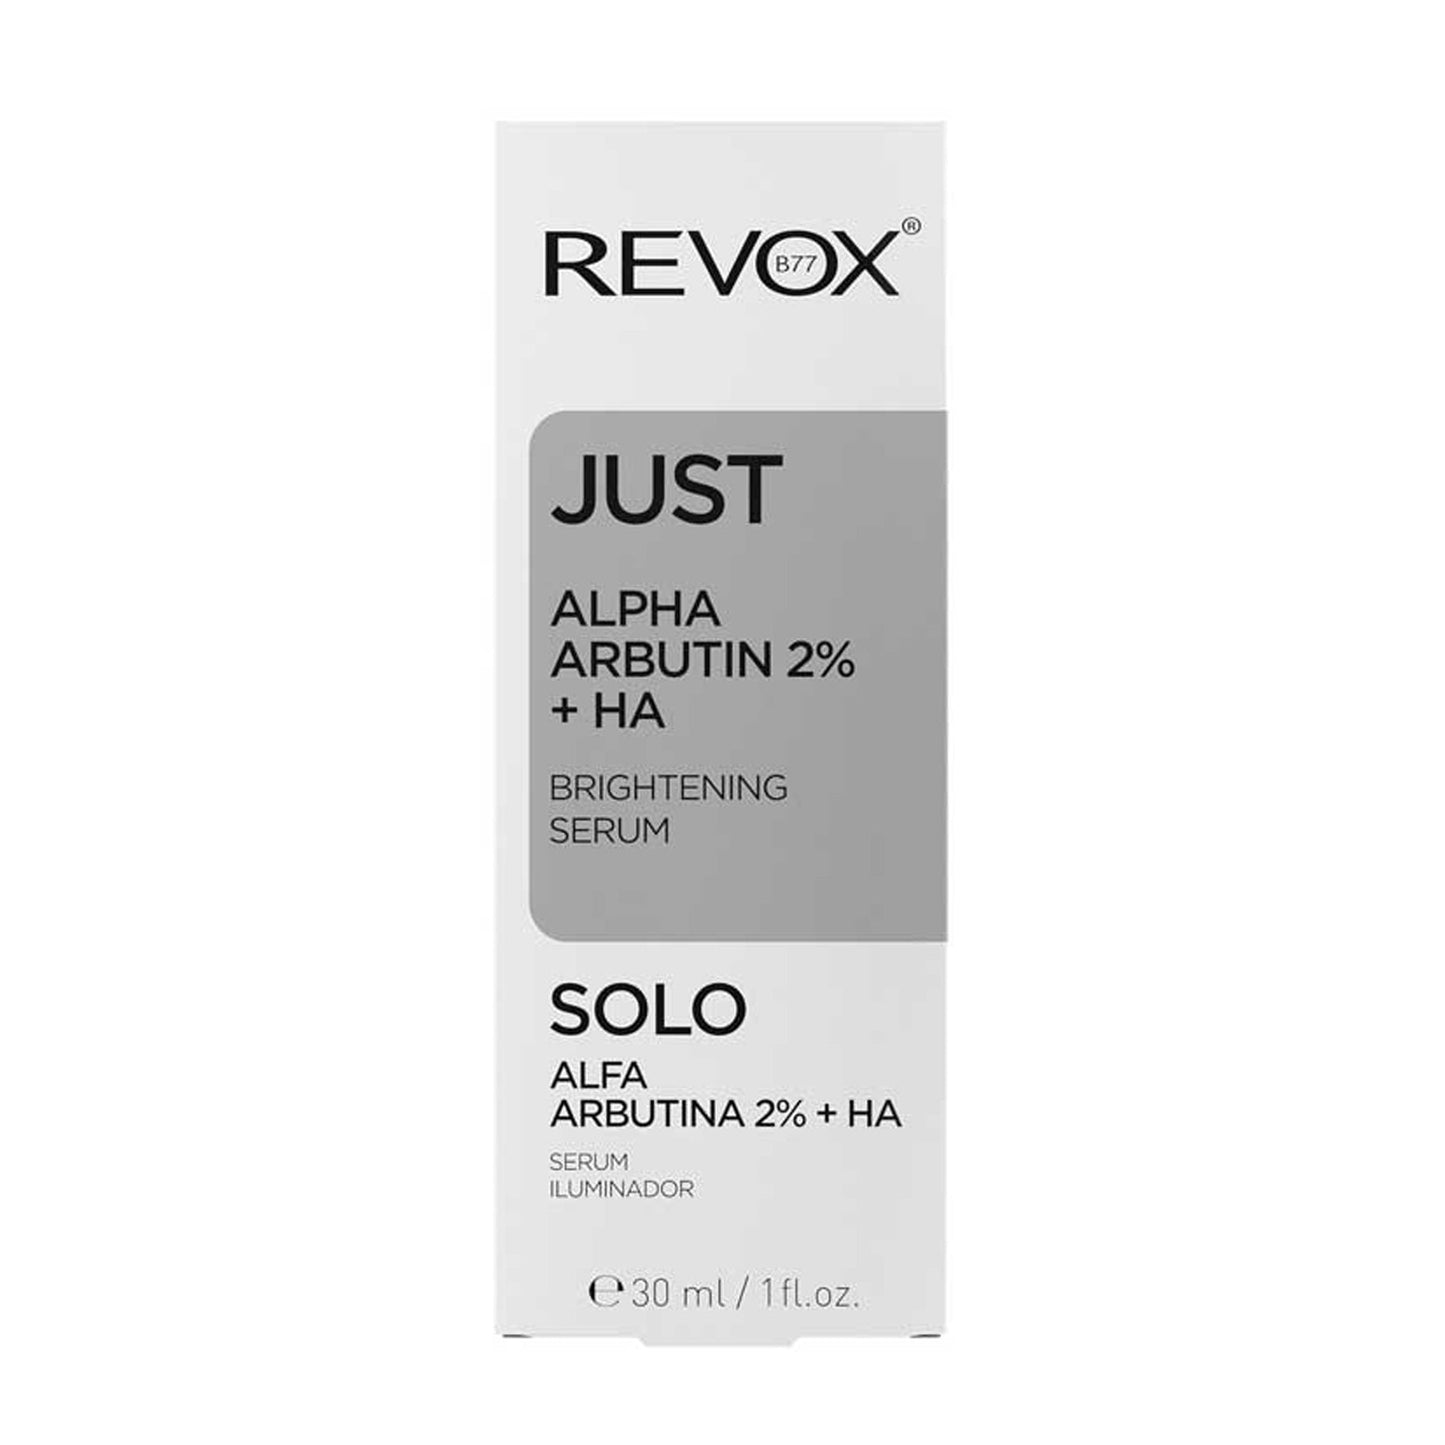 Revox B77 JUST Alpha Arbutin 2% + HA